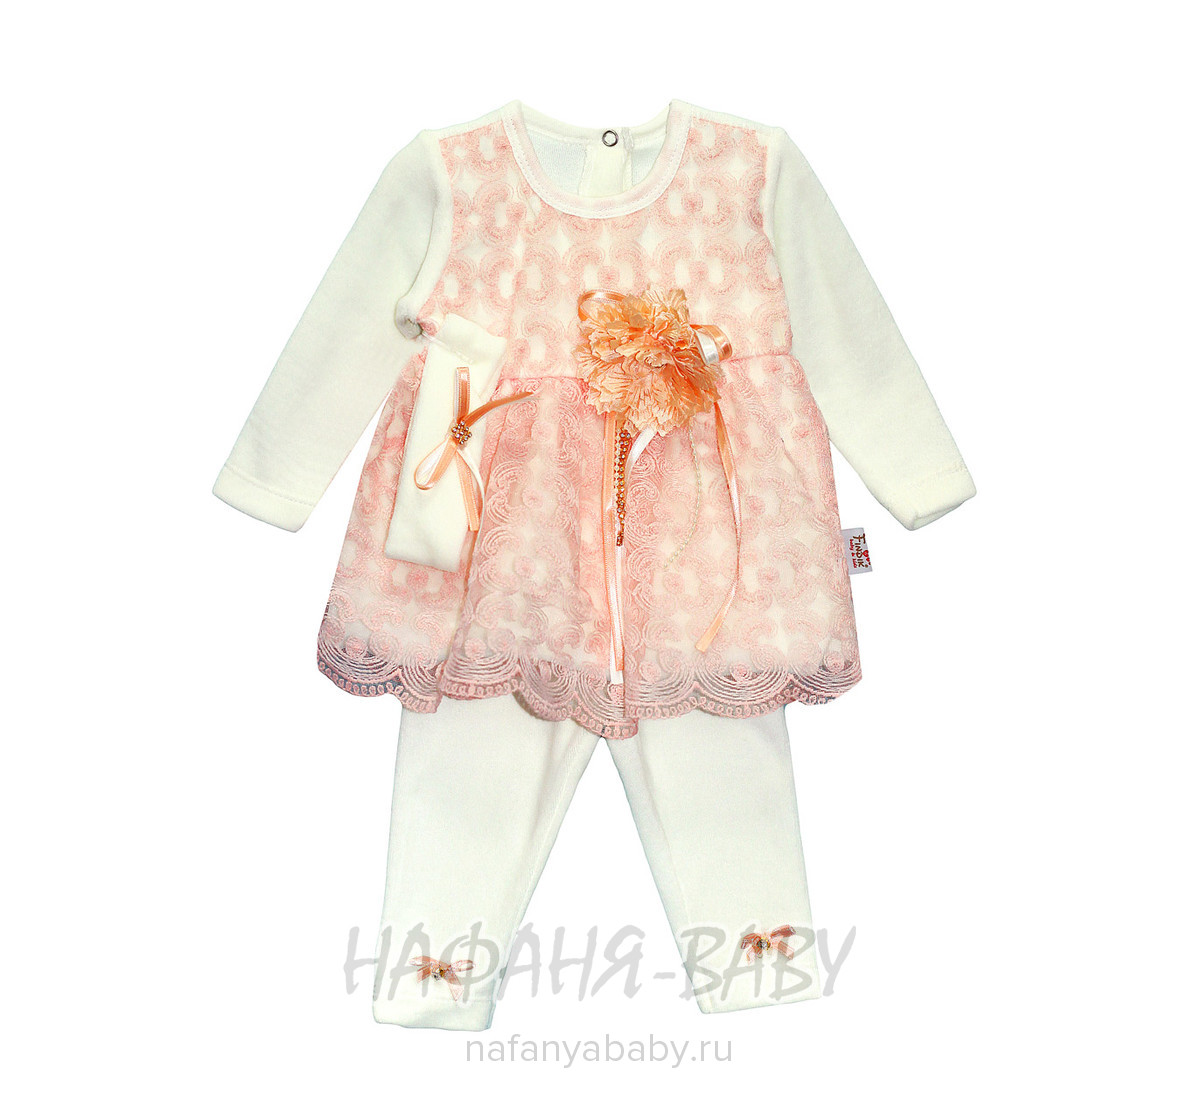 Детский костюм для новорожденных FINDIK арт: 69001, 0-12 мес, цвет молочный с персиковым, оптом Турция